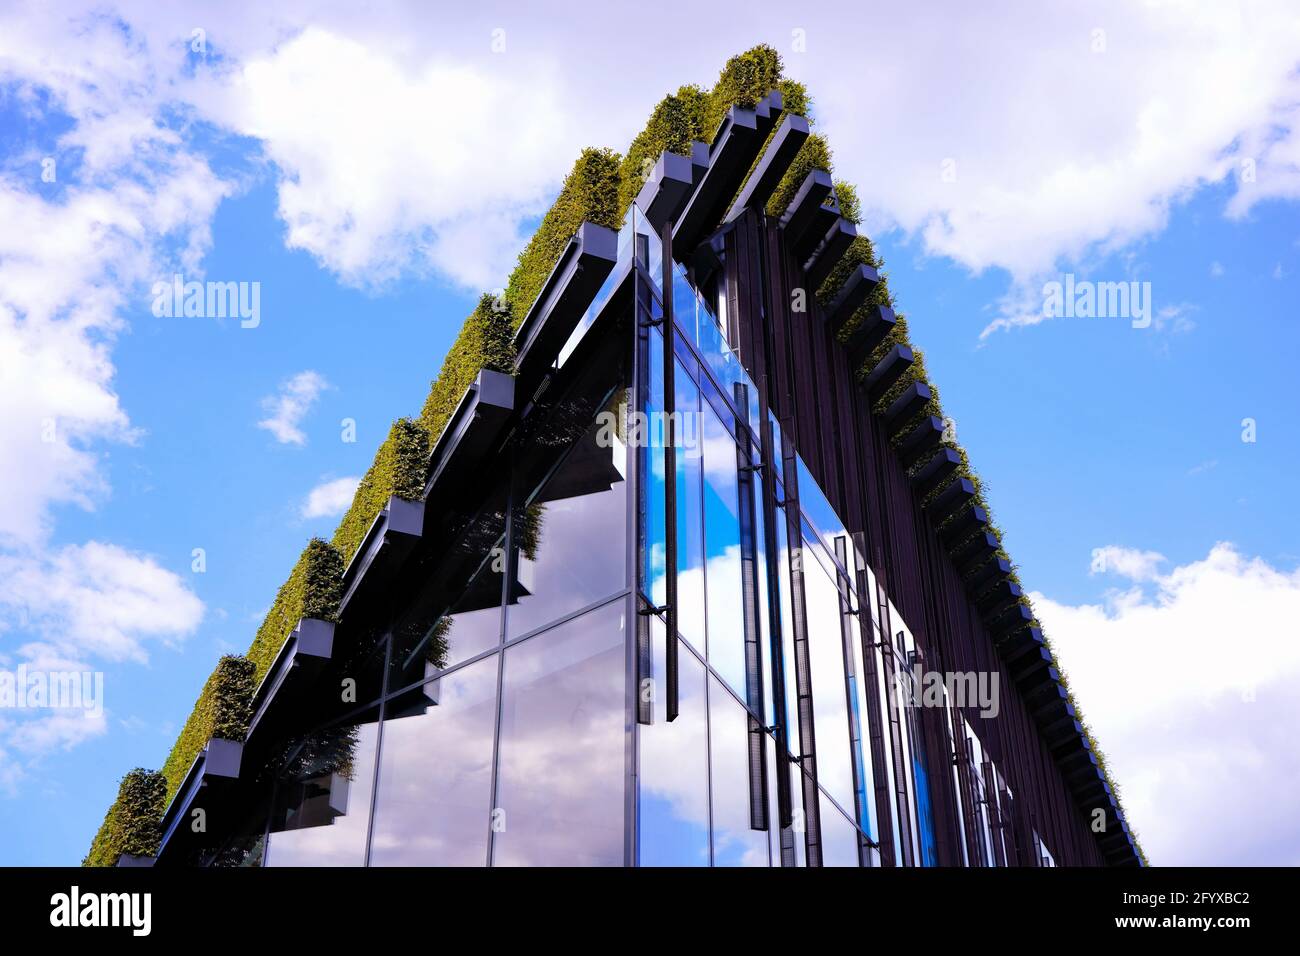 Bauen mit Hainbuche-Hecken auf dem Dach von Ingenhoven Architects - ein Projekt, um die Stadt grüner zu machen. Die Pflanzen dienen als natürliche Klimaanlage. Stockfoto